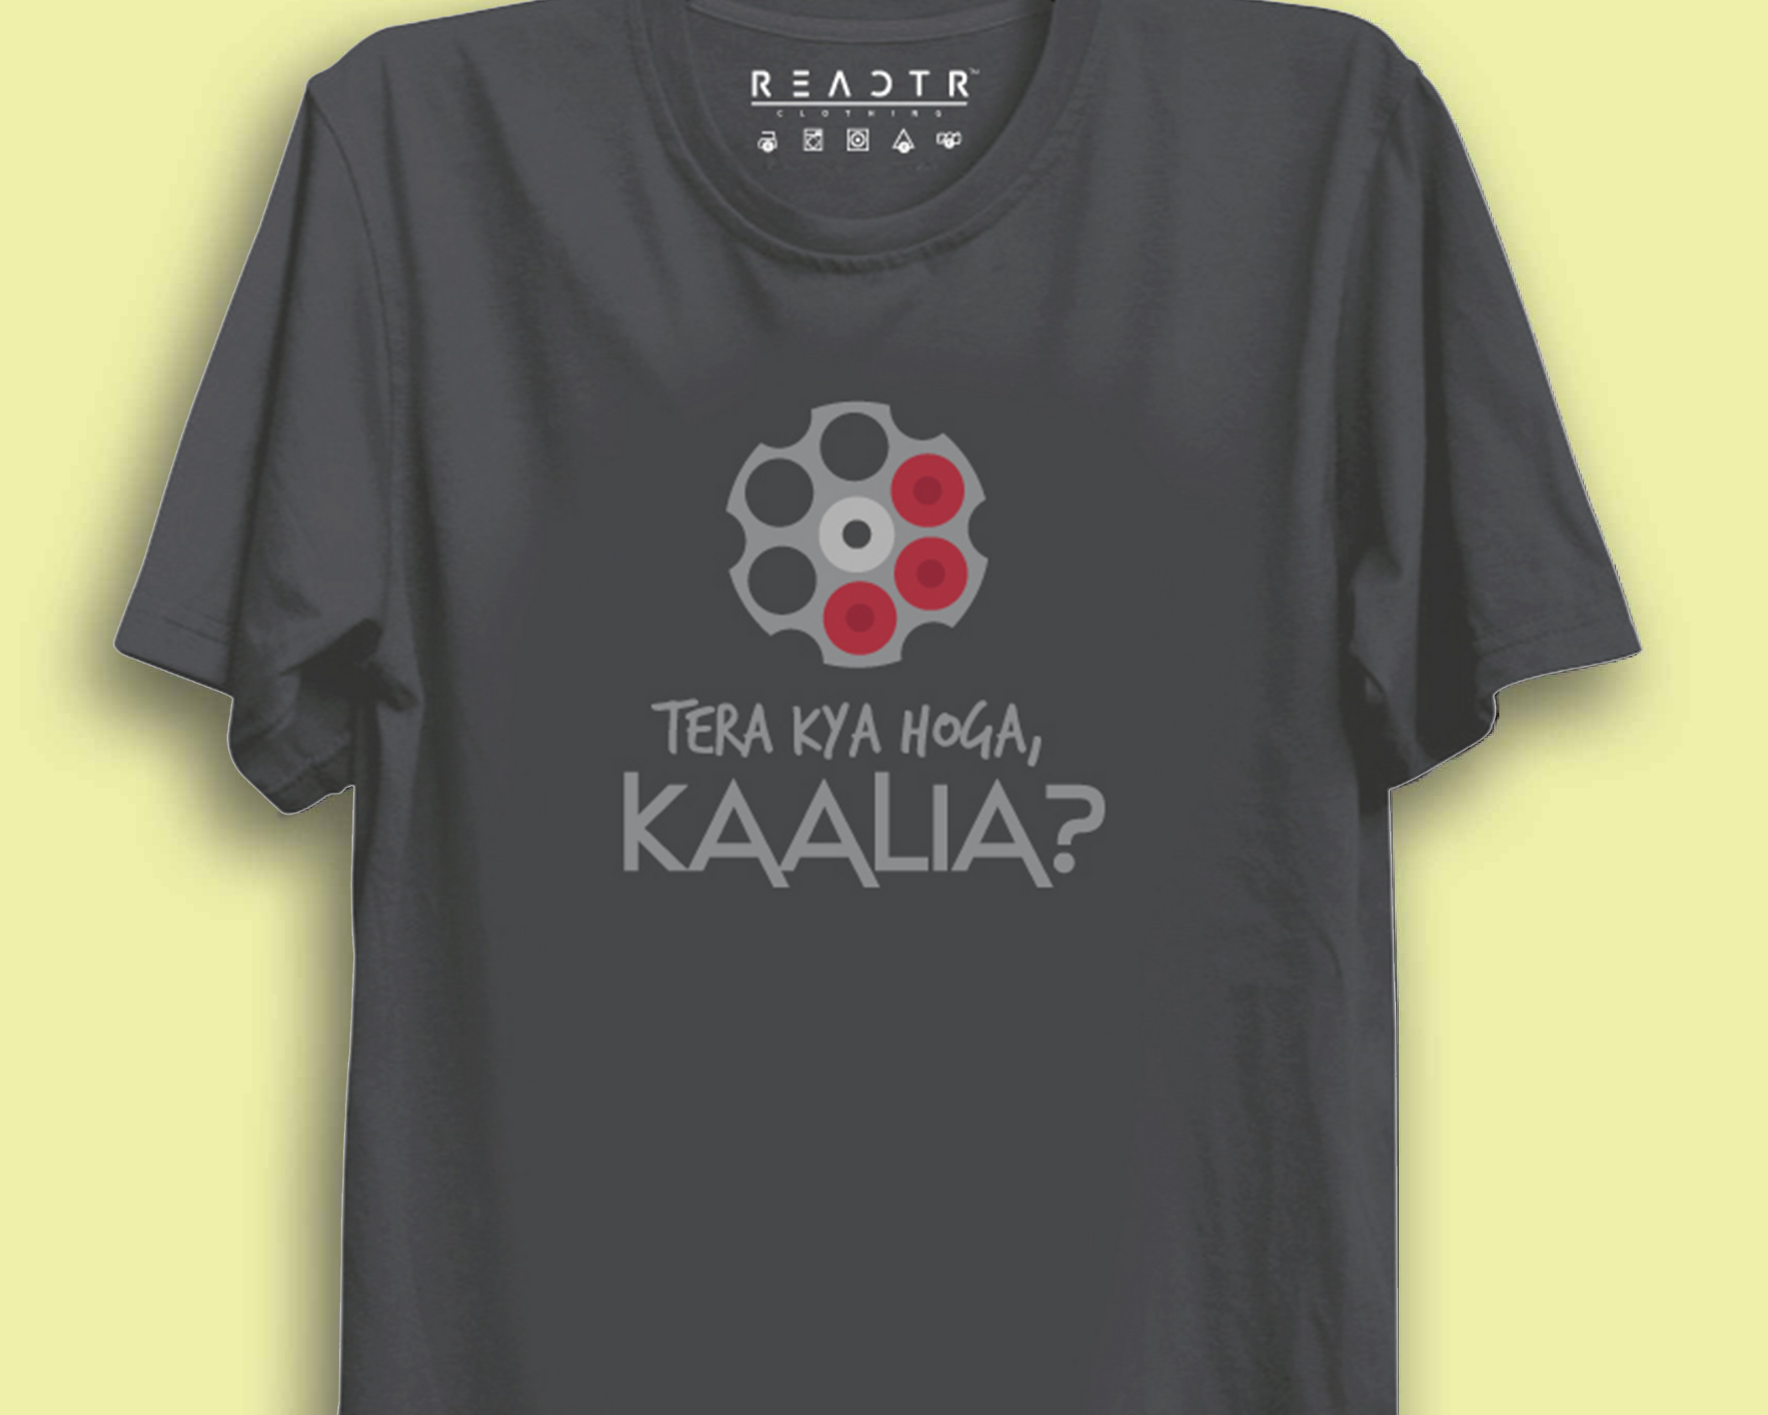 Tera Kya Hoga Reactr Tshirts For Men - Eyewearlabs